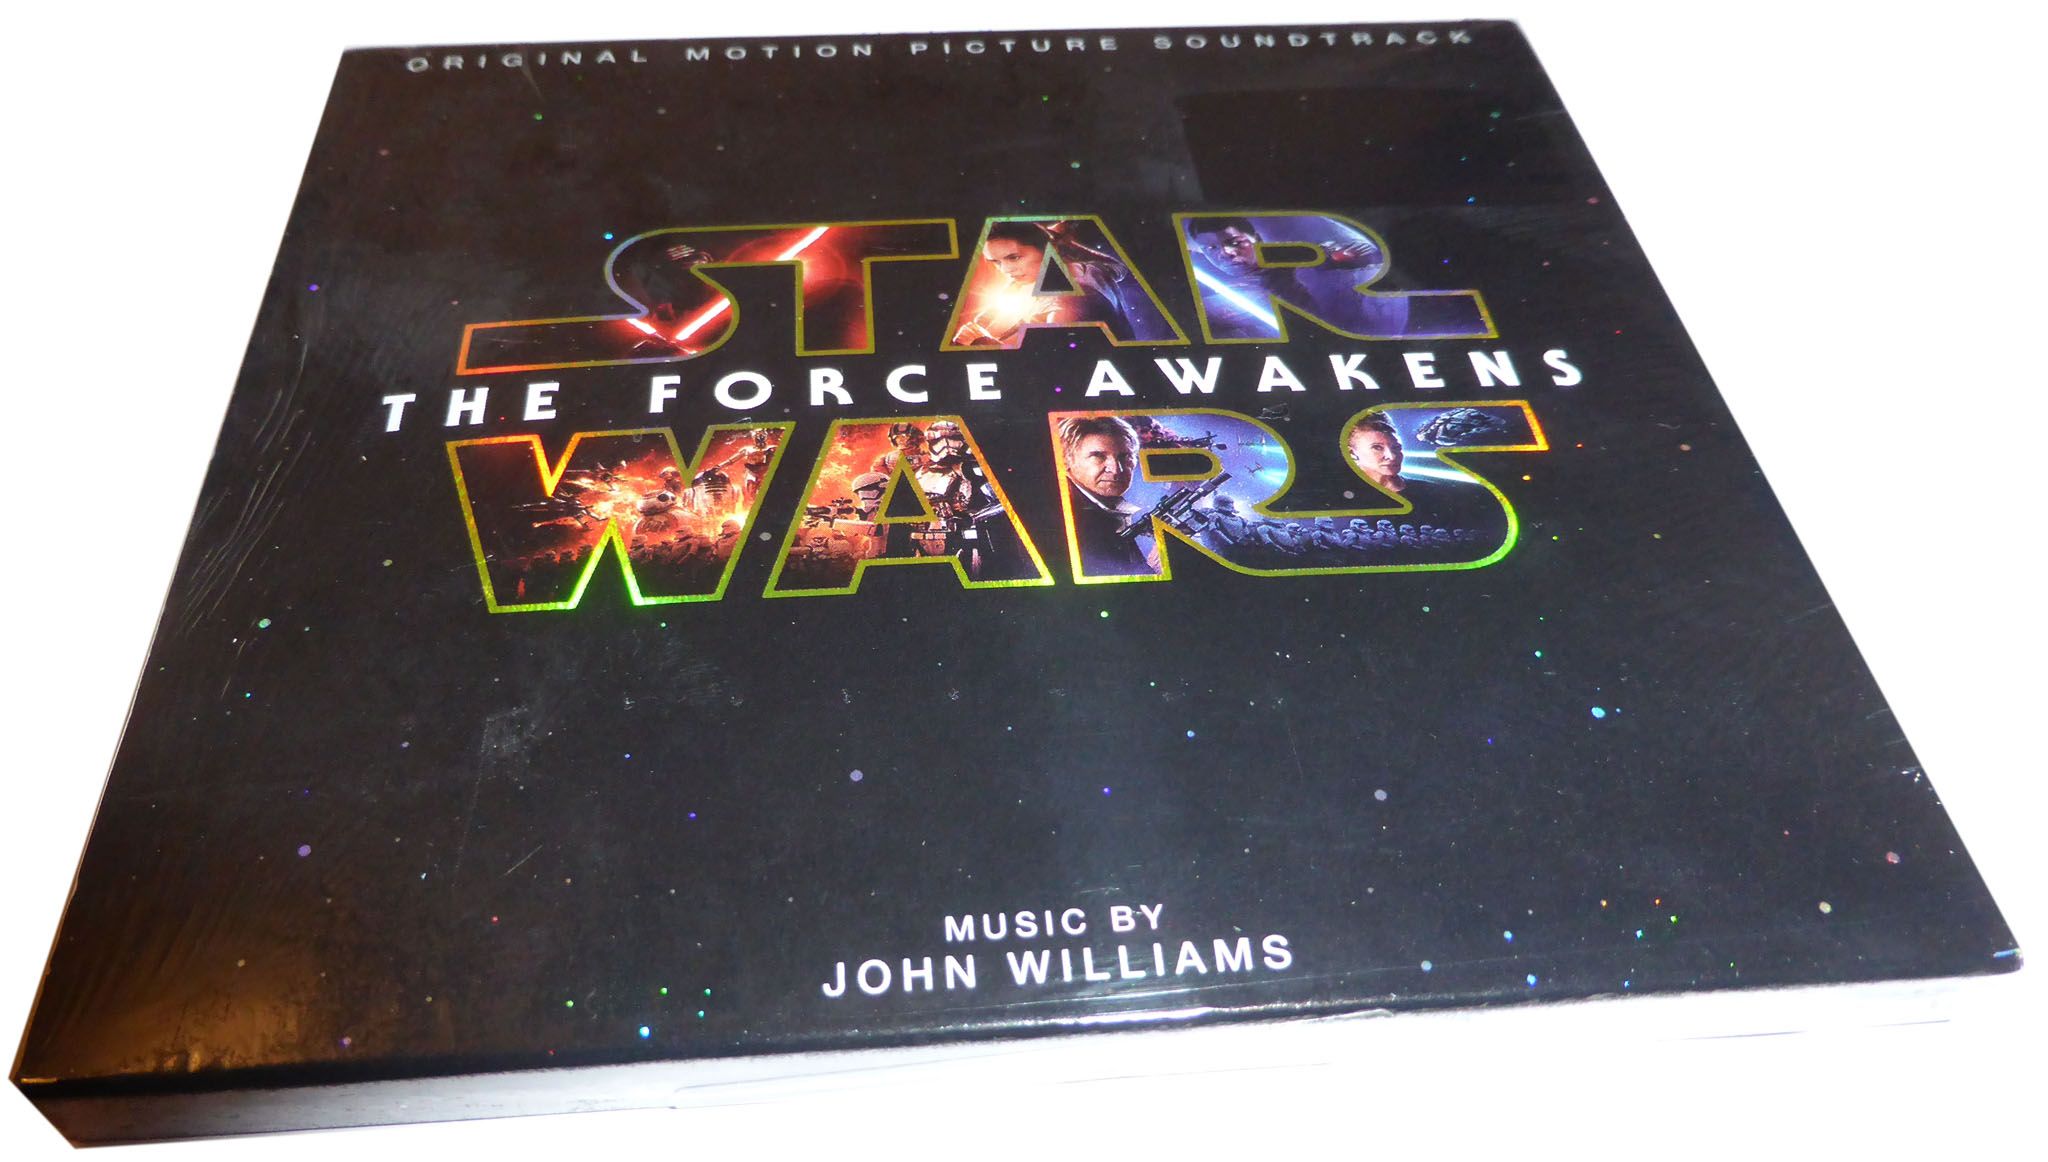 Джон Уильямс Звездные войны. Композитор Джон Уильямс саундтрек Звездные войны CD диск. Звездный диск